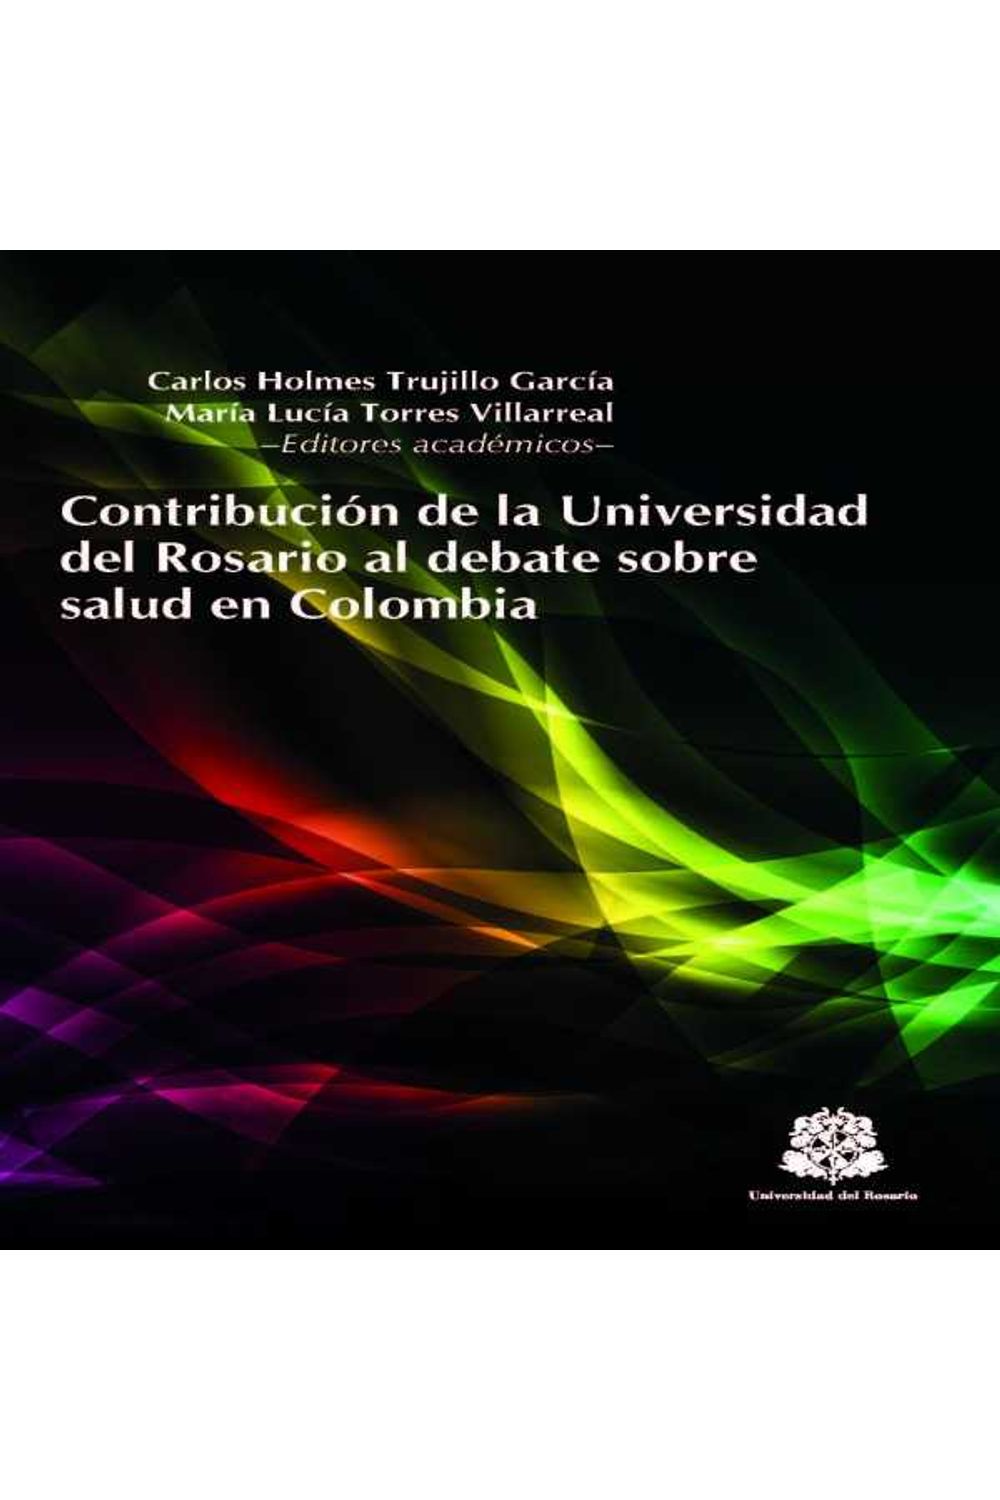 bw-contribucioacuten-de-la-universidad-del-rosario-al-debate-sobre-salud-en-colombia-editorial-universidad-del-rosario-9789587383812